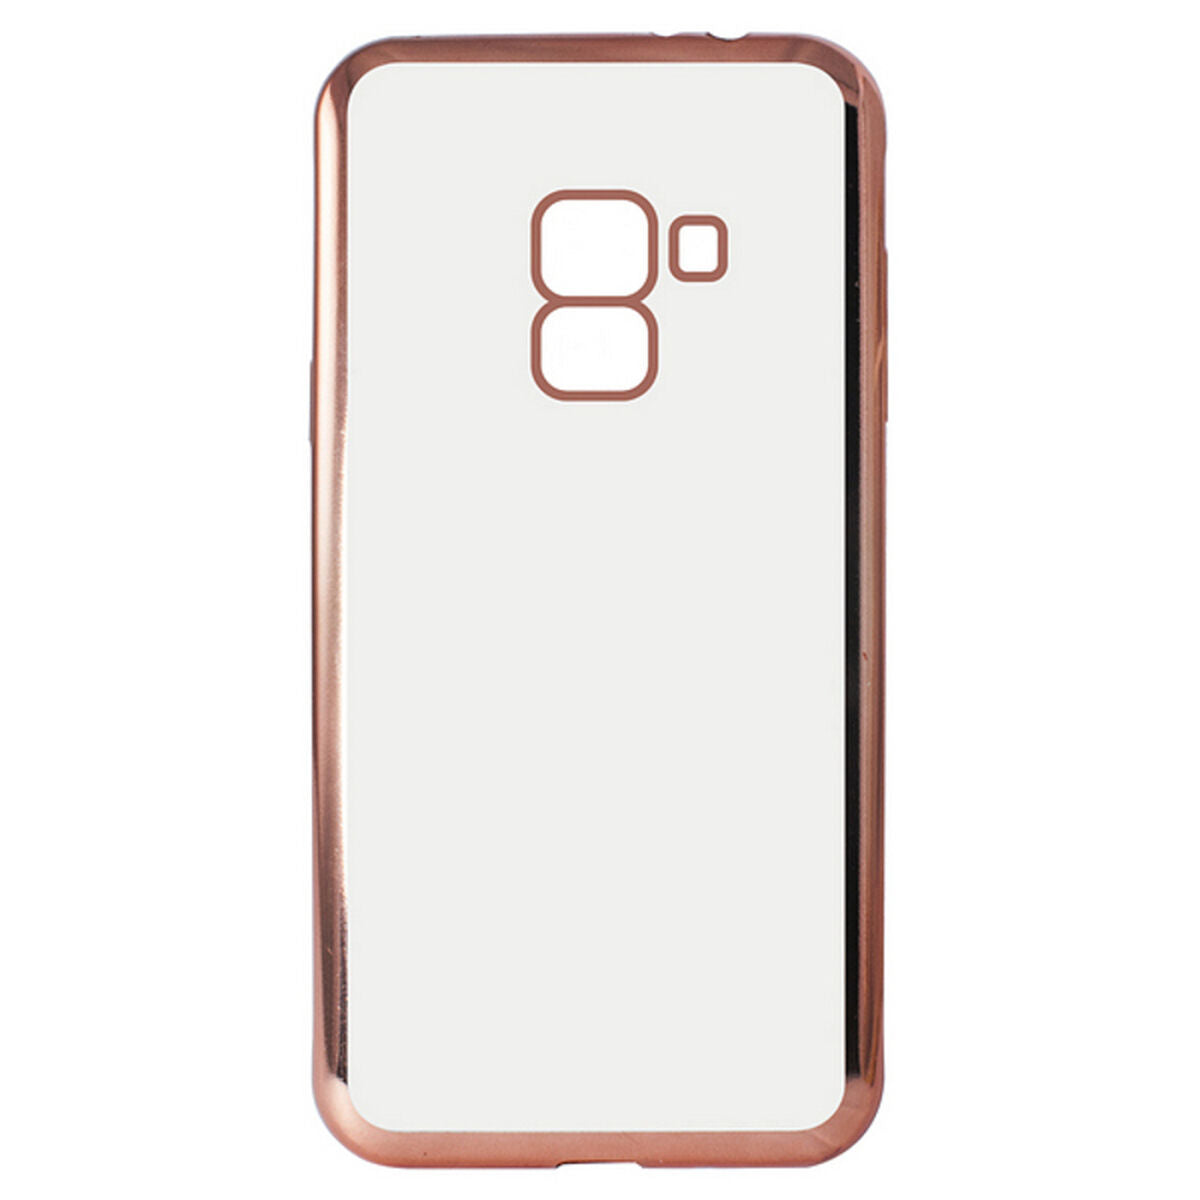 Protection pour téléphone portable Galaxy A8 2018 Flex Metal